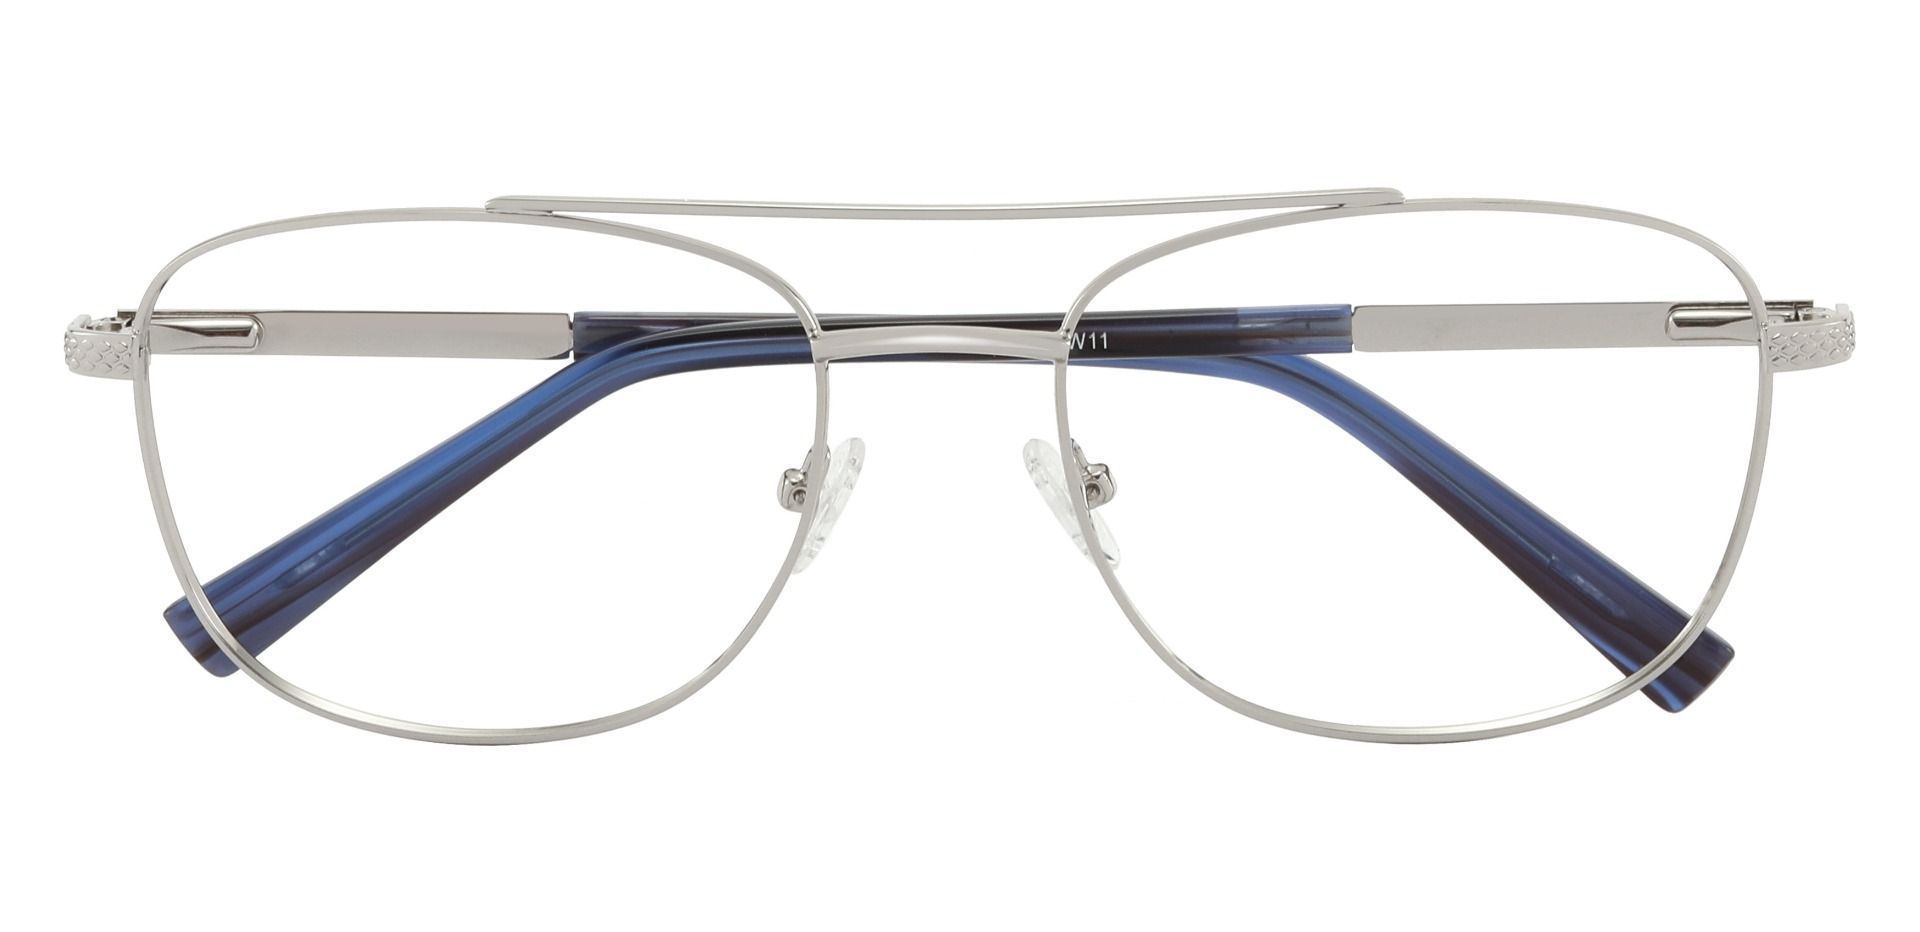 Erick Aviator Eyeglasses Frame - Silver